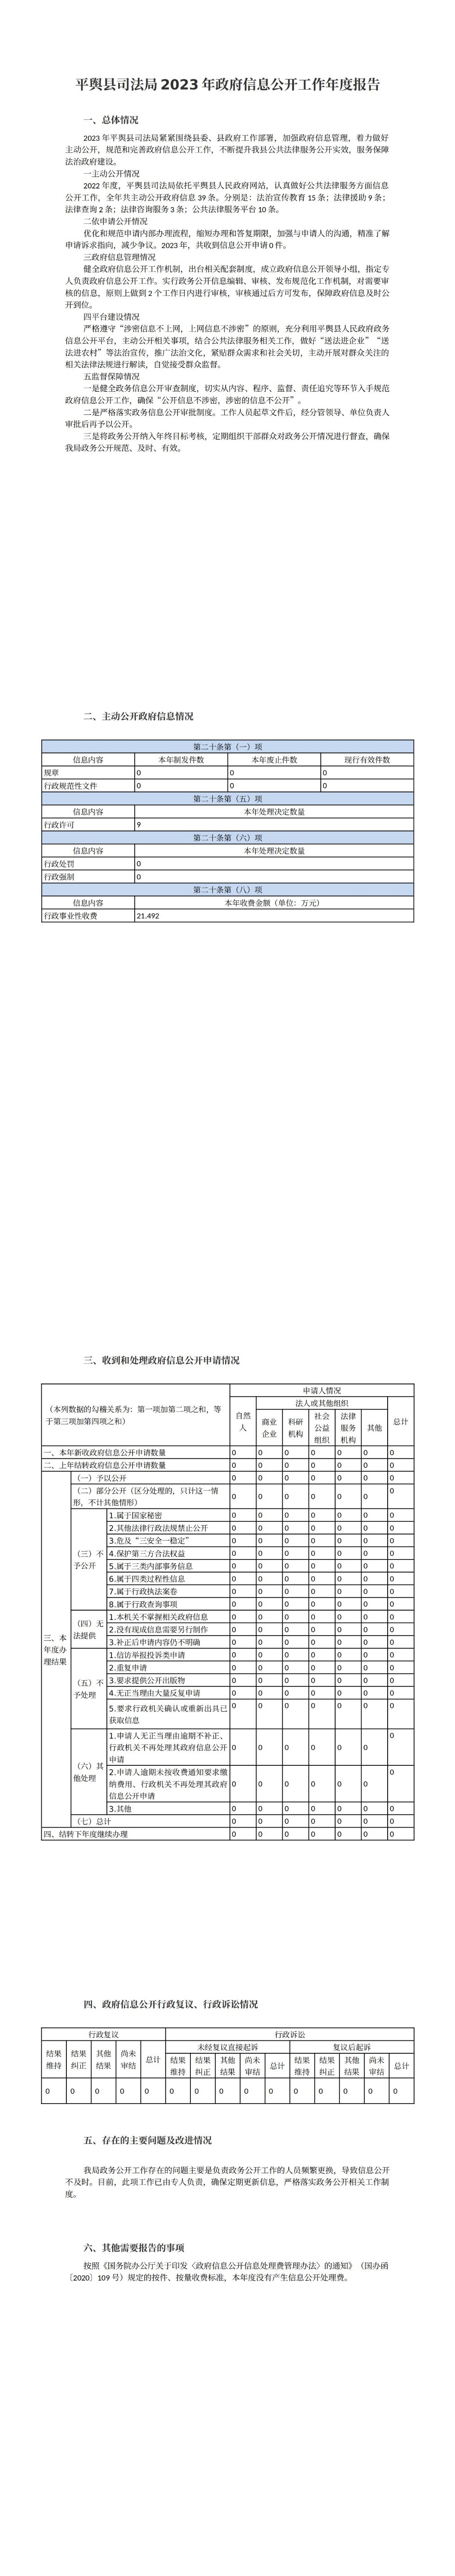 平舆县司法局2023年政府信息公开工作年度报告_00(1).jpg